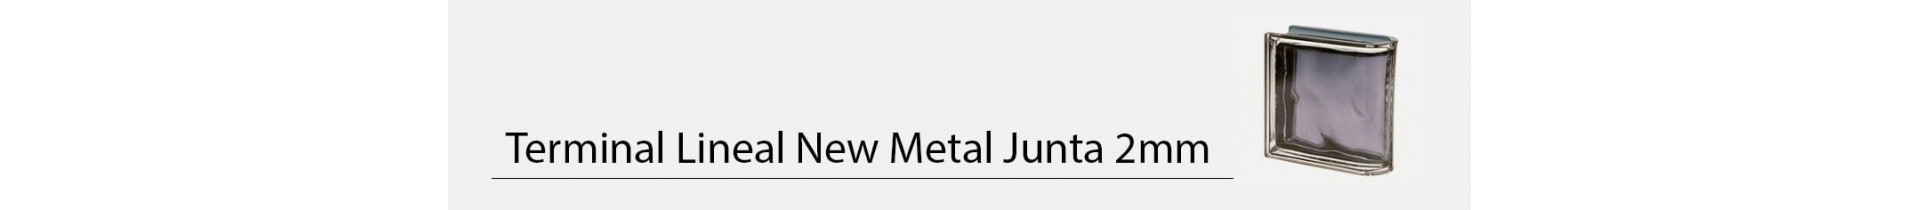 Terminal Lineal New Metal Junta 2mm